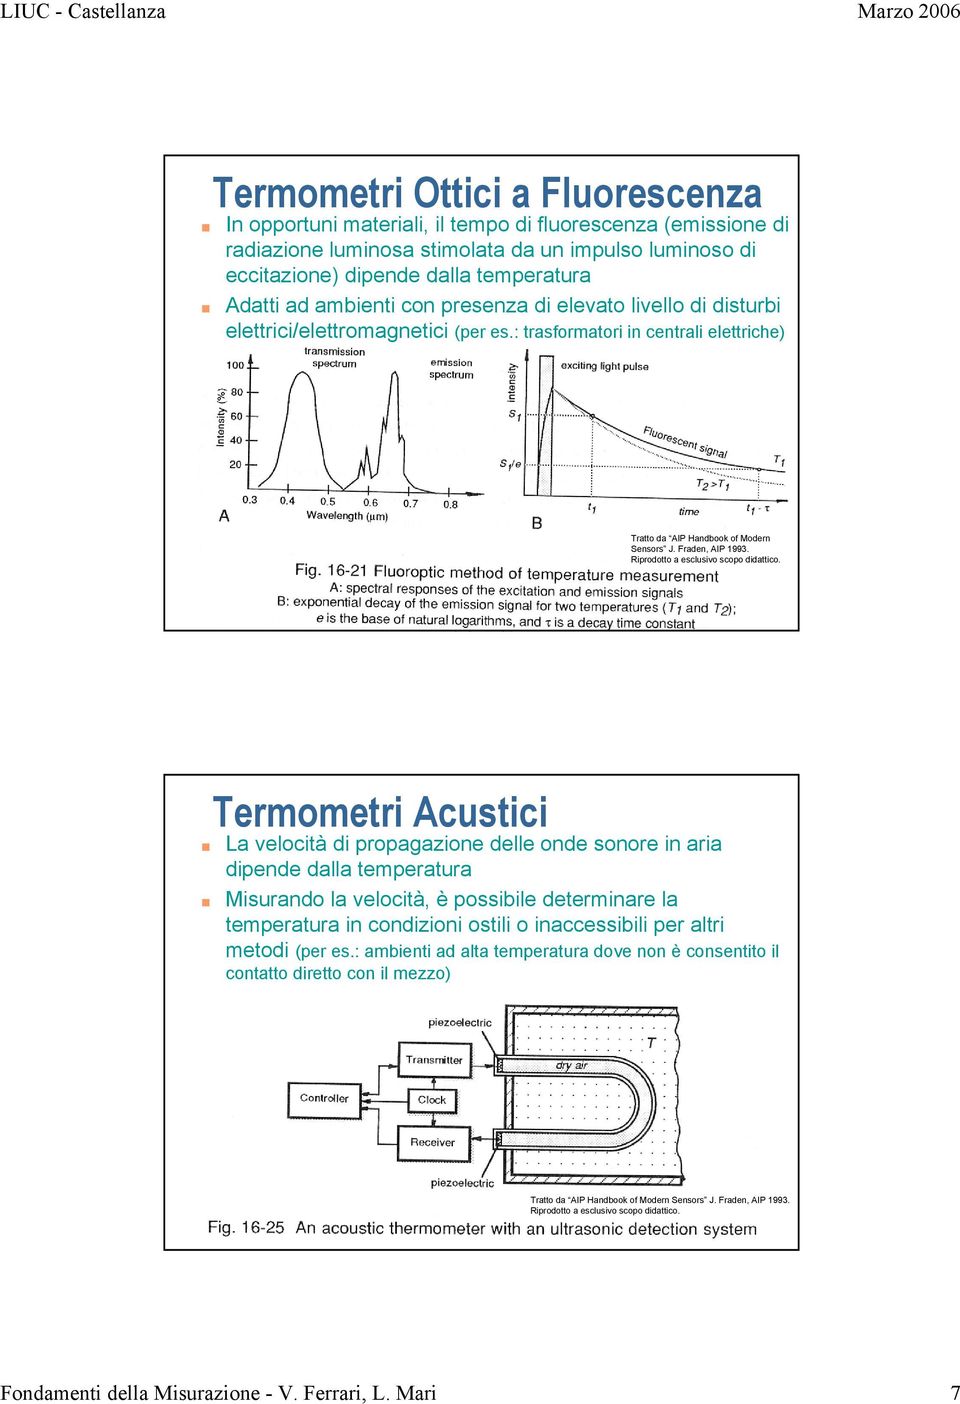 Termometri Acustici La velocità di propagazione delle onde sonore in aria dipende dalla temperatura Misurando la velocità, è possibile determinare la temperatura in condizioni ostili o inaccessibili